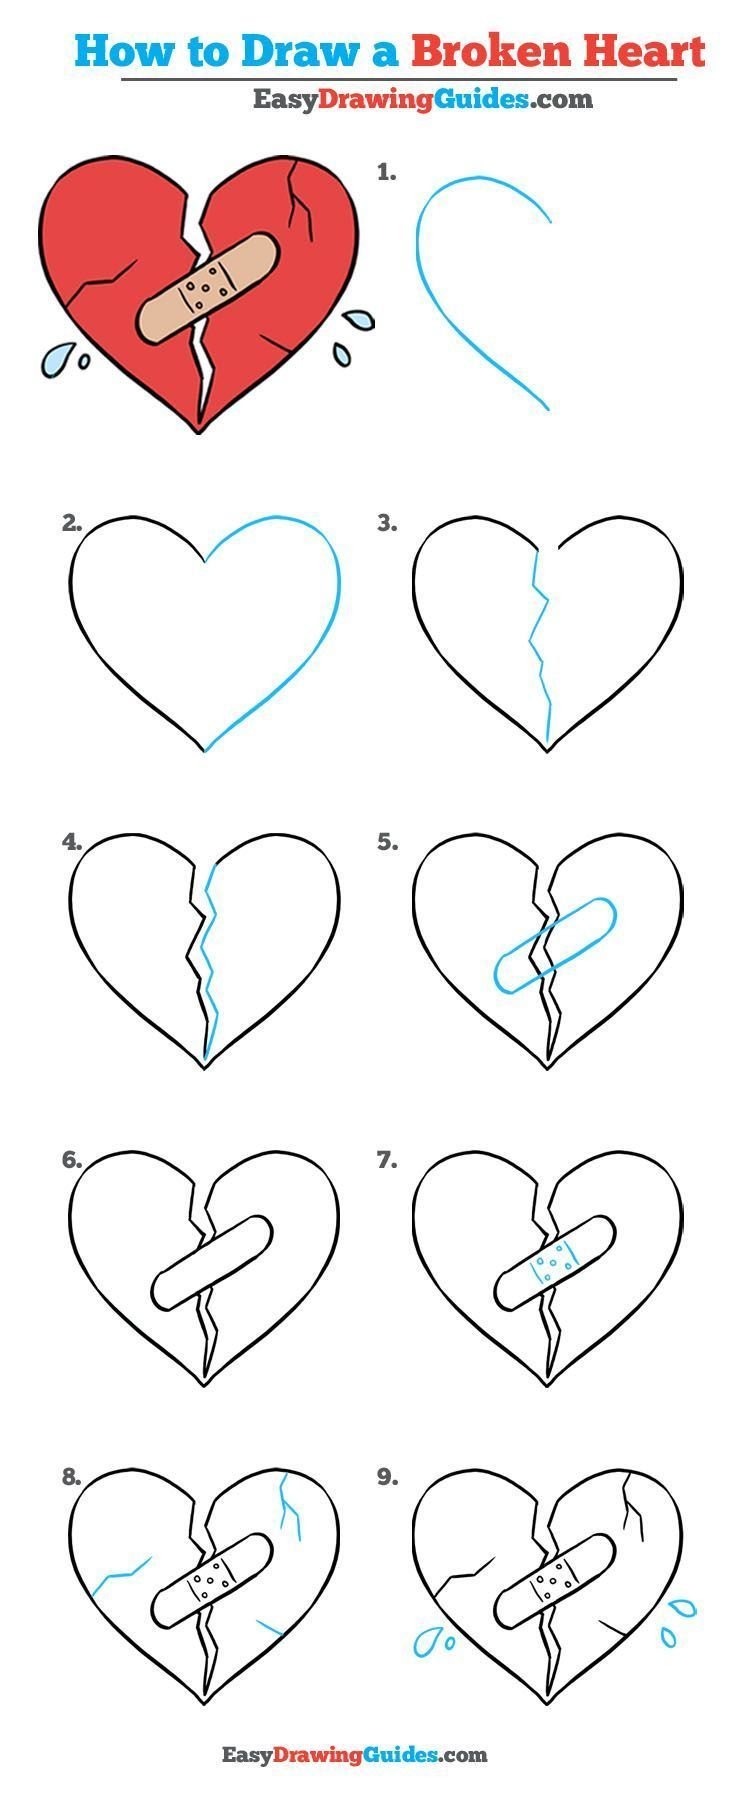 Как рисовать сердце поэтапно